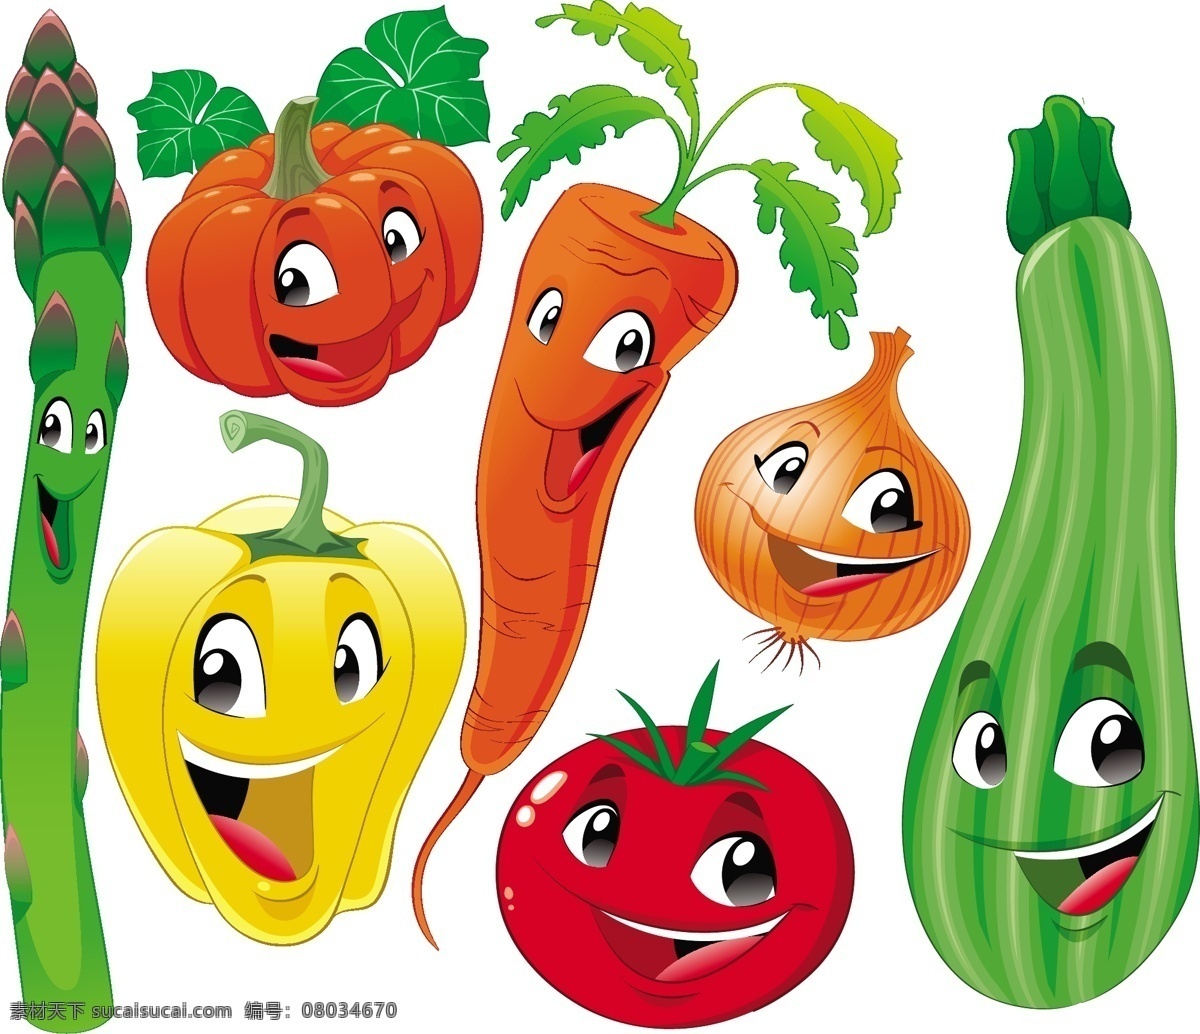 可爱 的卡 通 蔬菜 卡通蔬菜 动漫蔬菜 矢量蔬菜 卡通 动漫 矢量 生物世界 蔬菜水果 矢量素材 白色